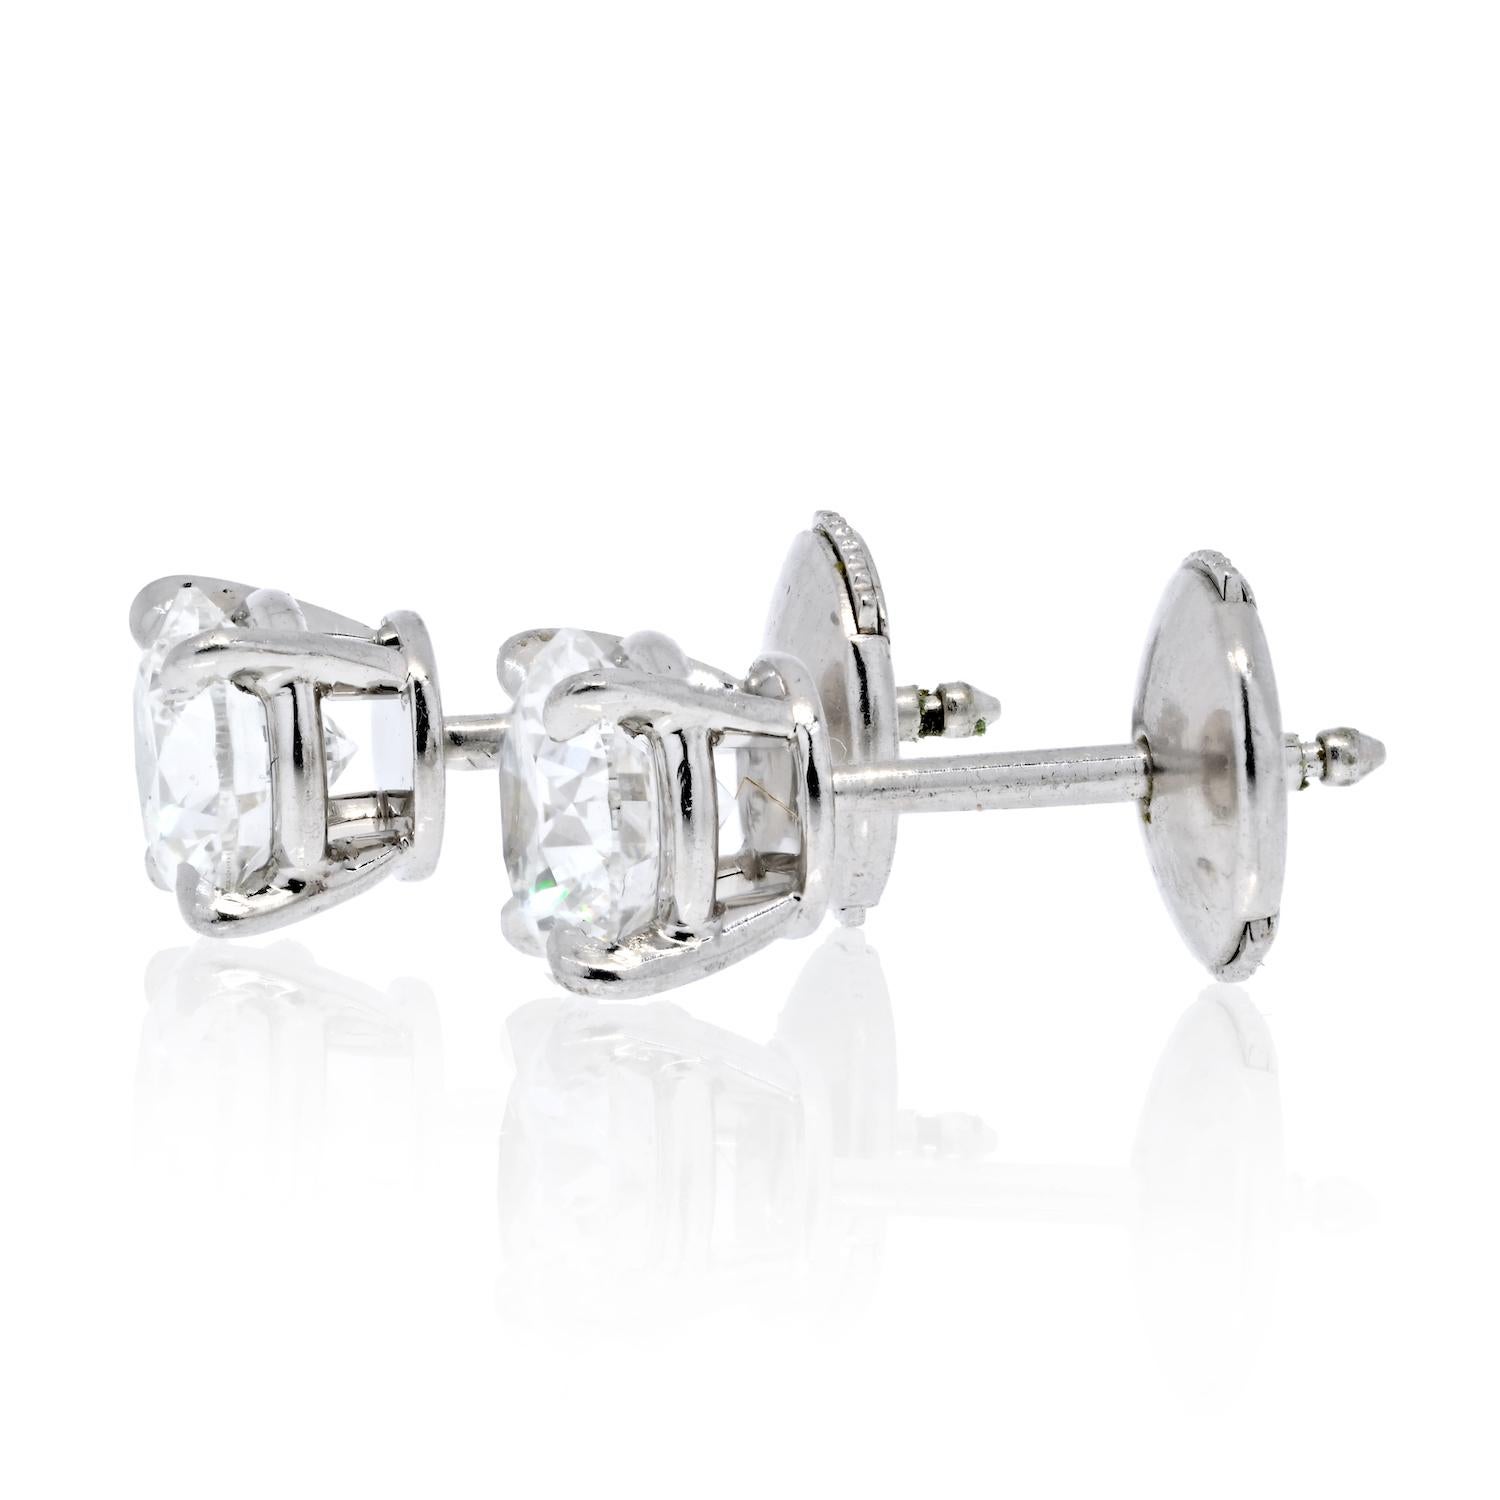 cartier diamond stud earrings